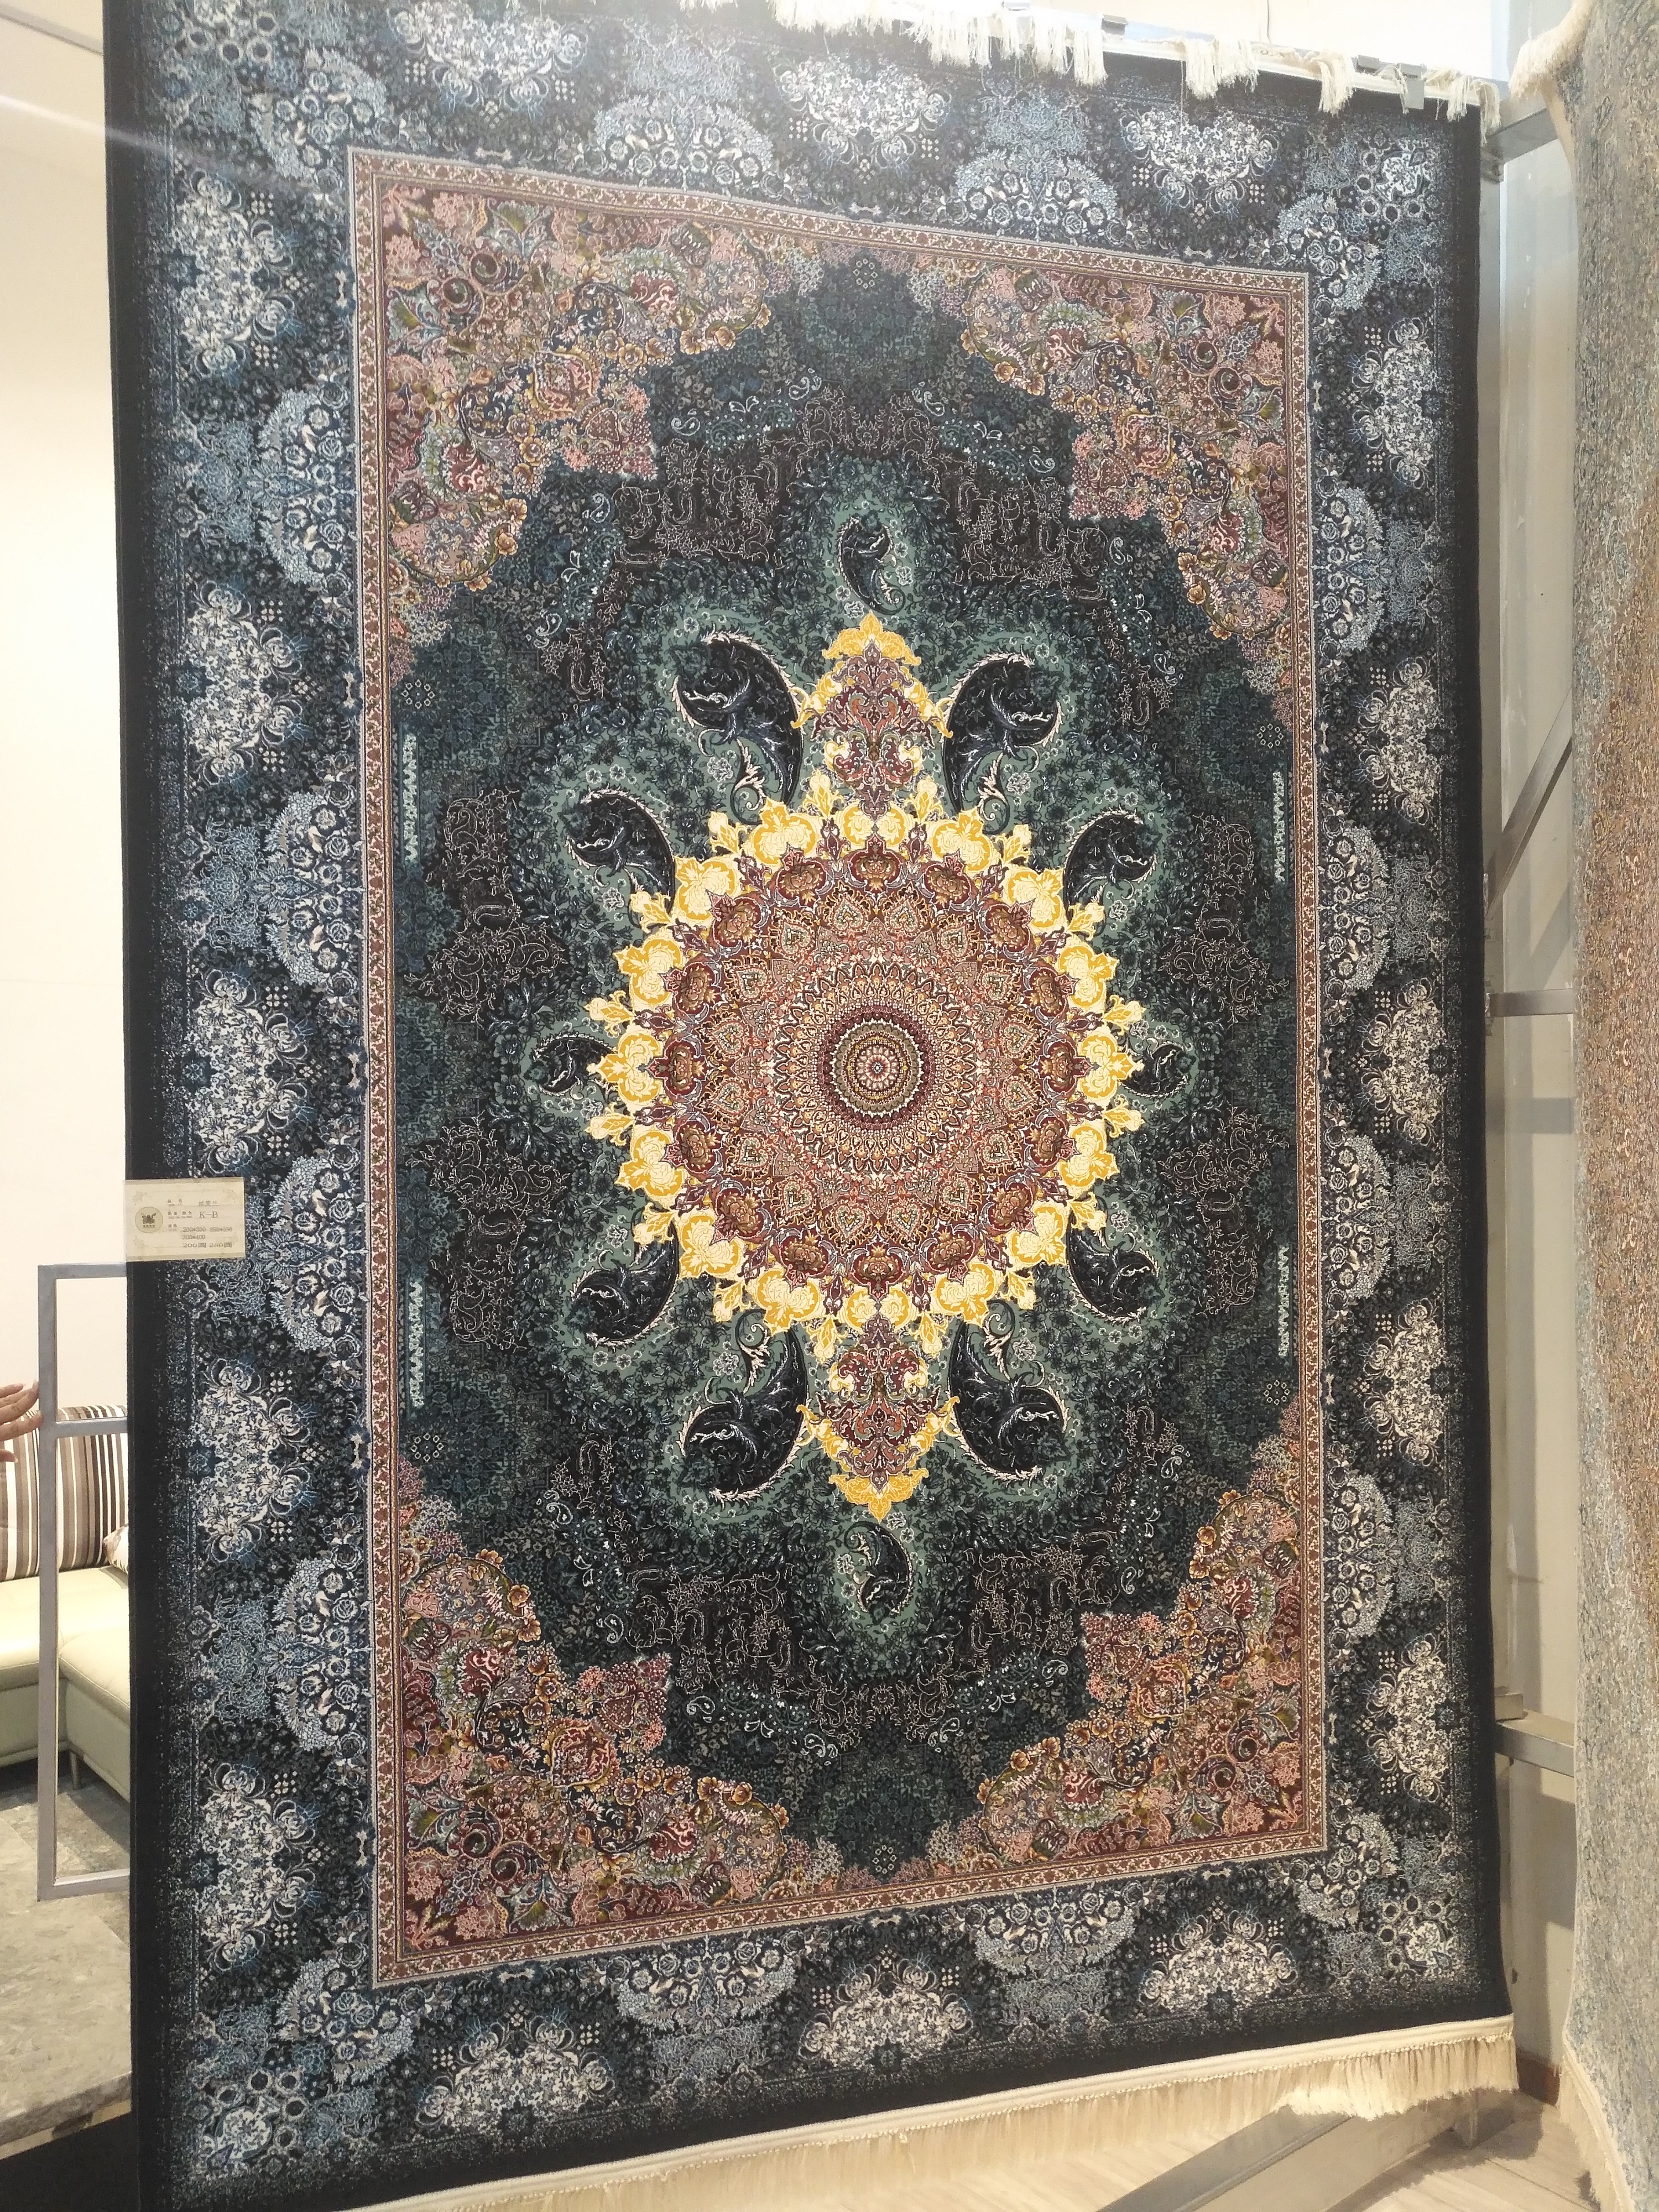 19世纪末伊朗为欧洲市场设计编织的地毯-外国地毯织品纹样-图片